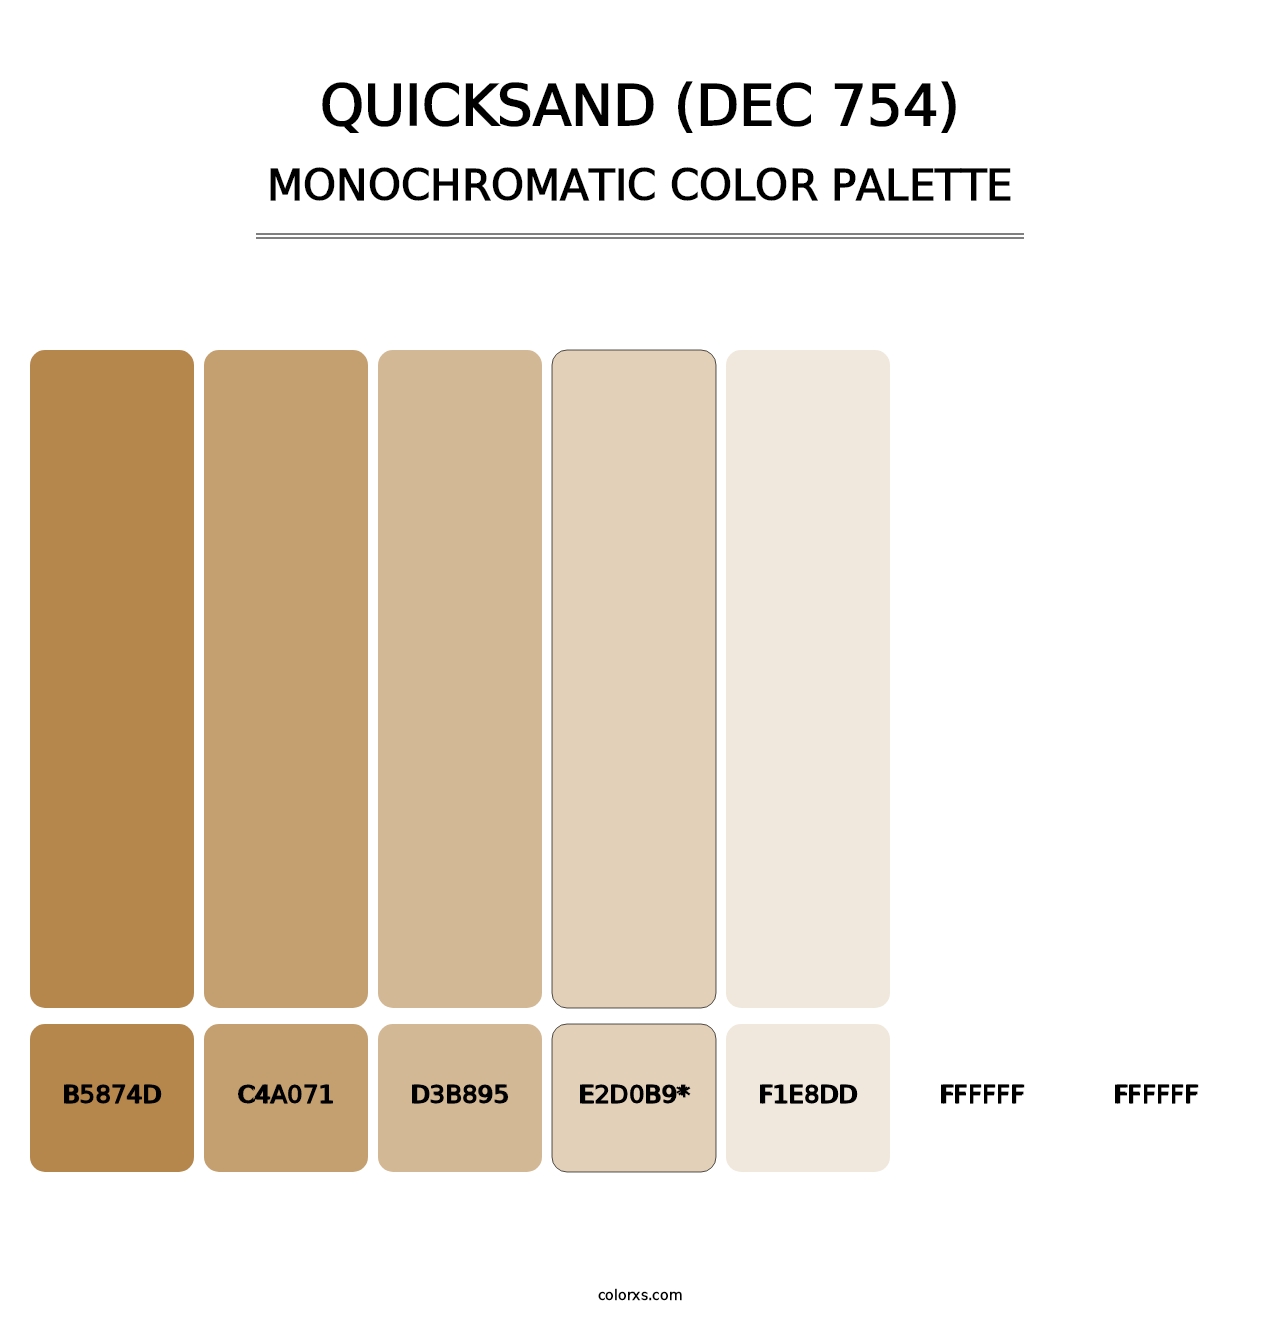 Quicksand (DEC 754) - Monochromatic Color Palette